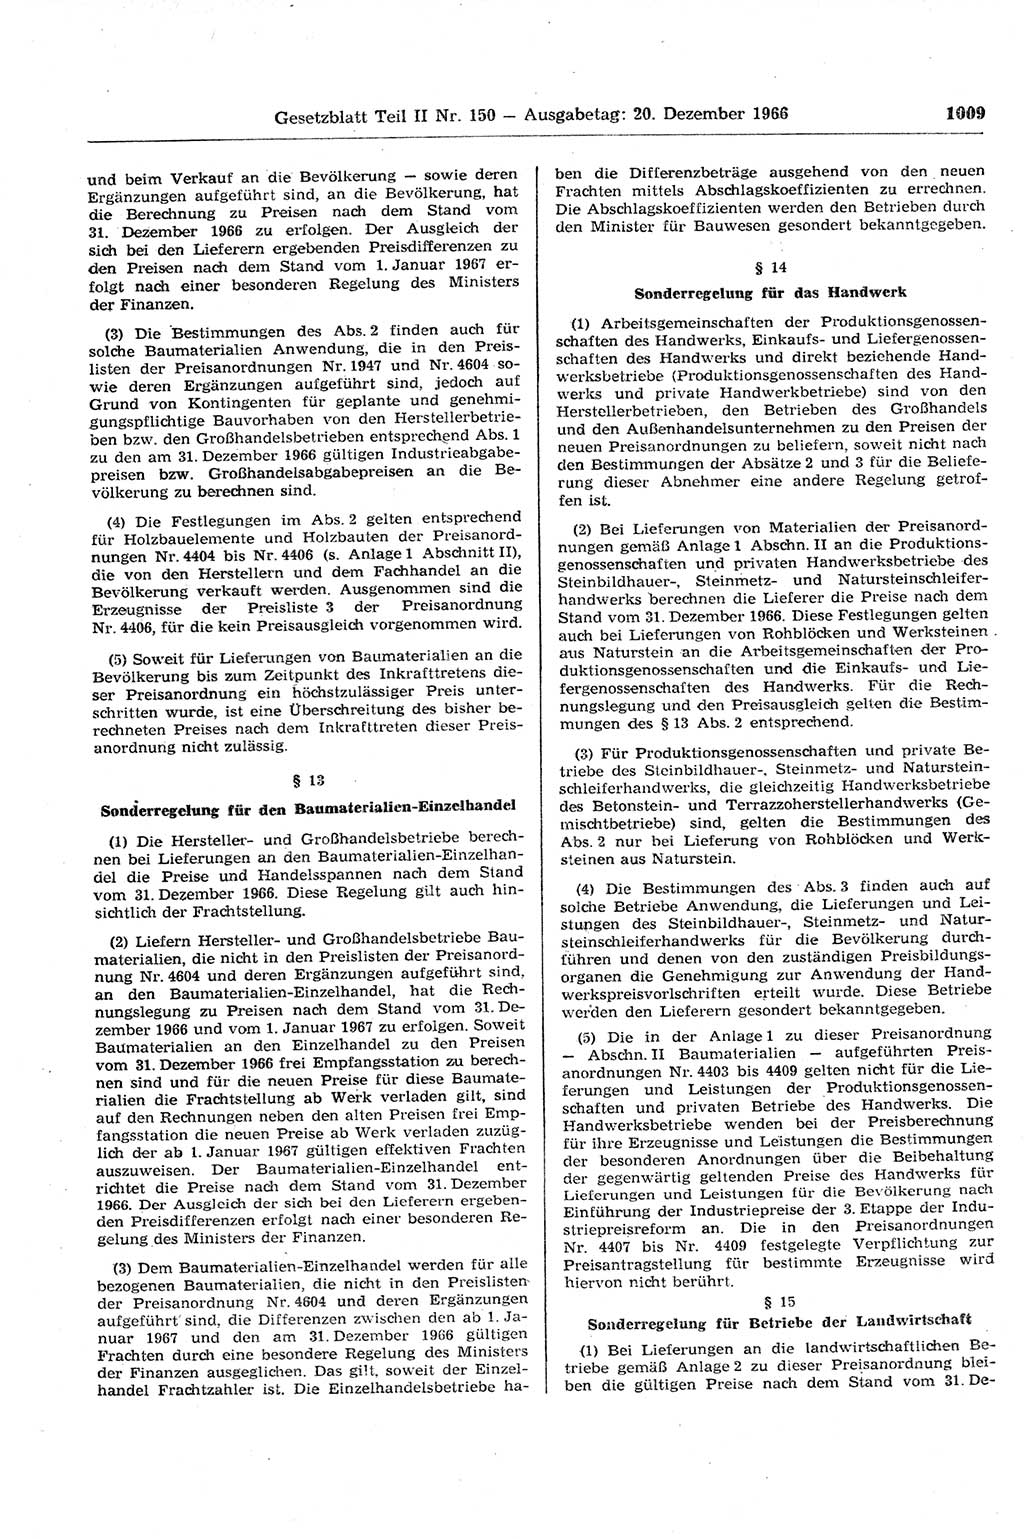 Gesetzblatt (GBl.) der Deutschen Demokratischen Republik (DDR) Teil ⅠⅠ 1966, Seite 1009 (GBl. DDR ⅠⅠ 1966, S. 1009)